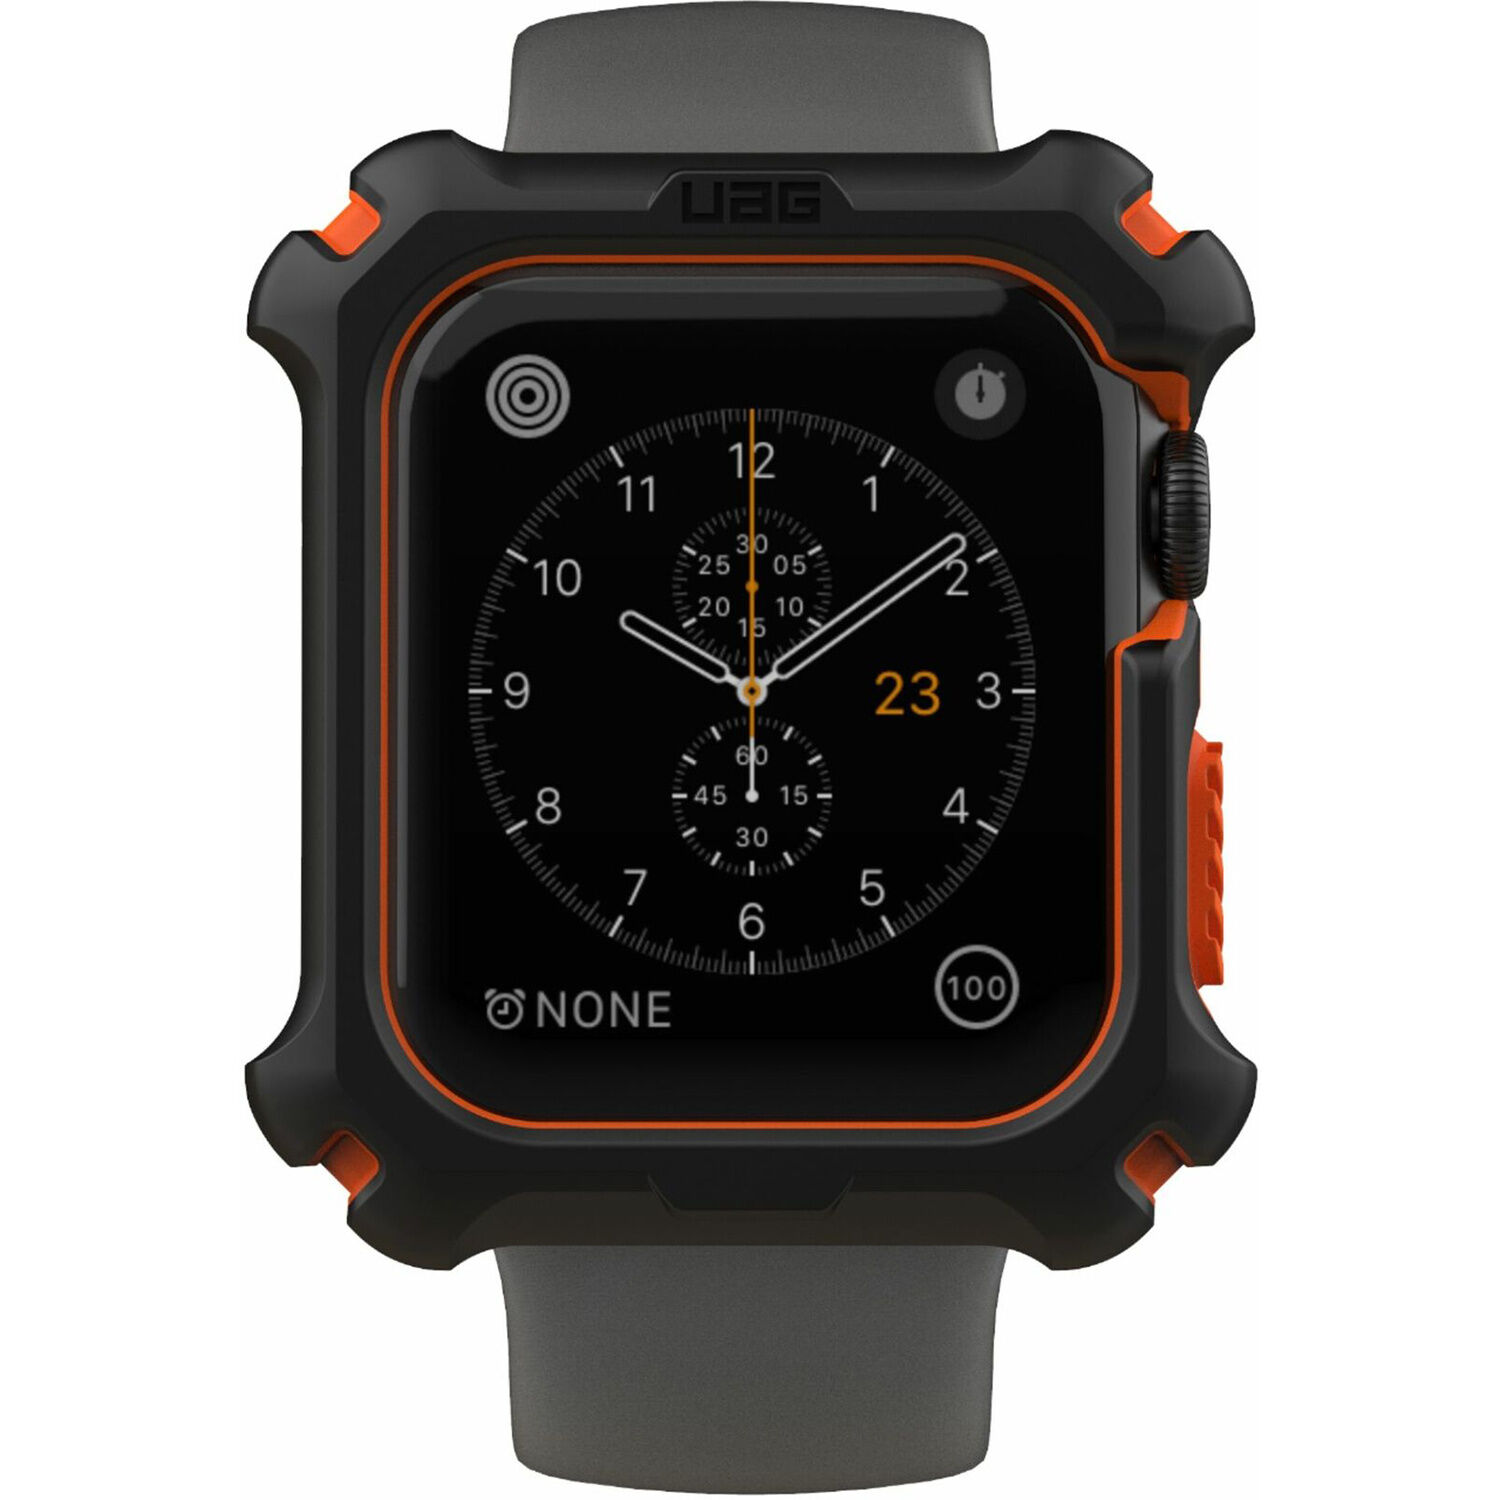 UAG Coque rigide Rugged pour l'Apple Watch 44 mm - Orange Noir